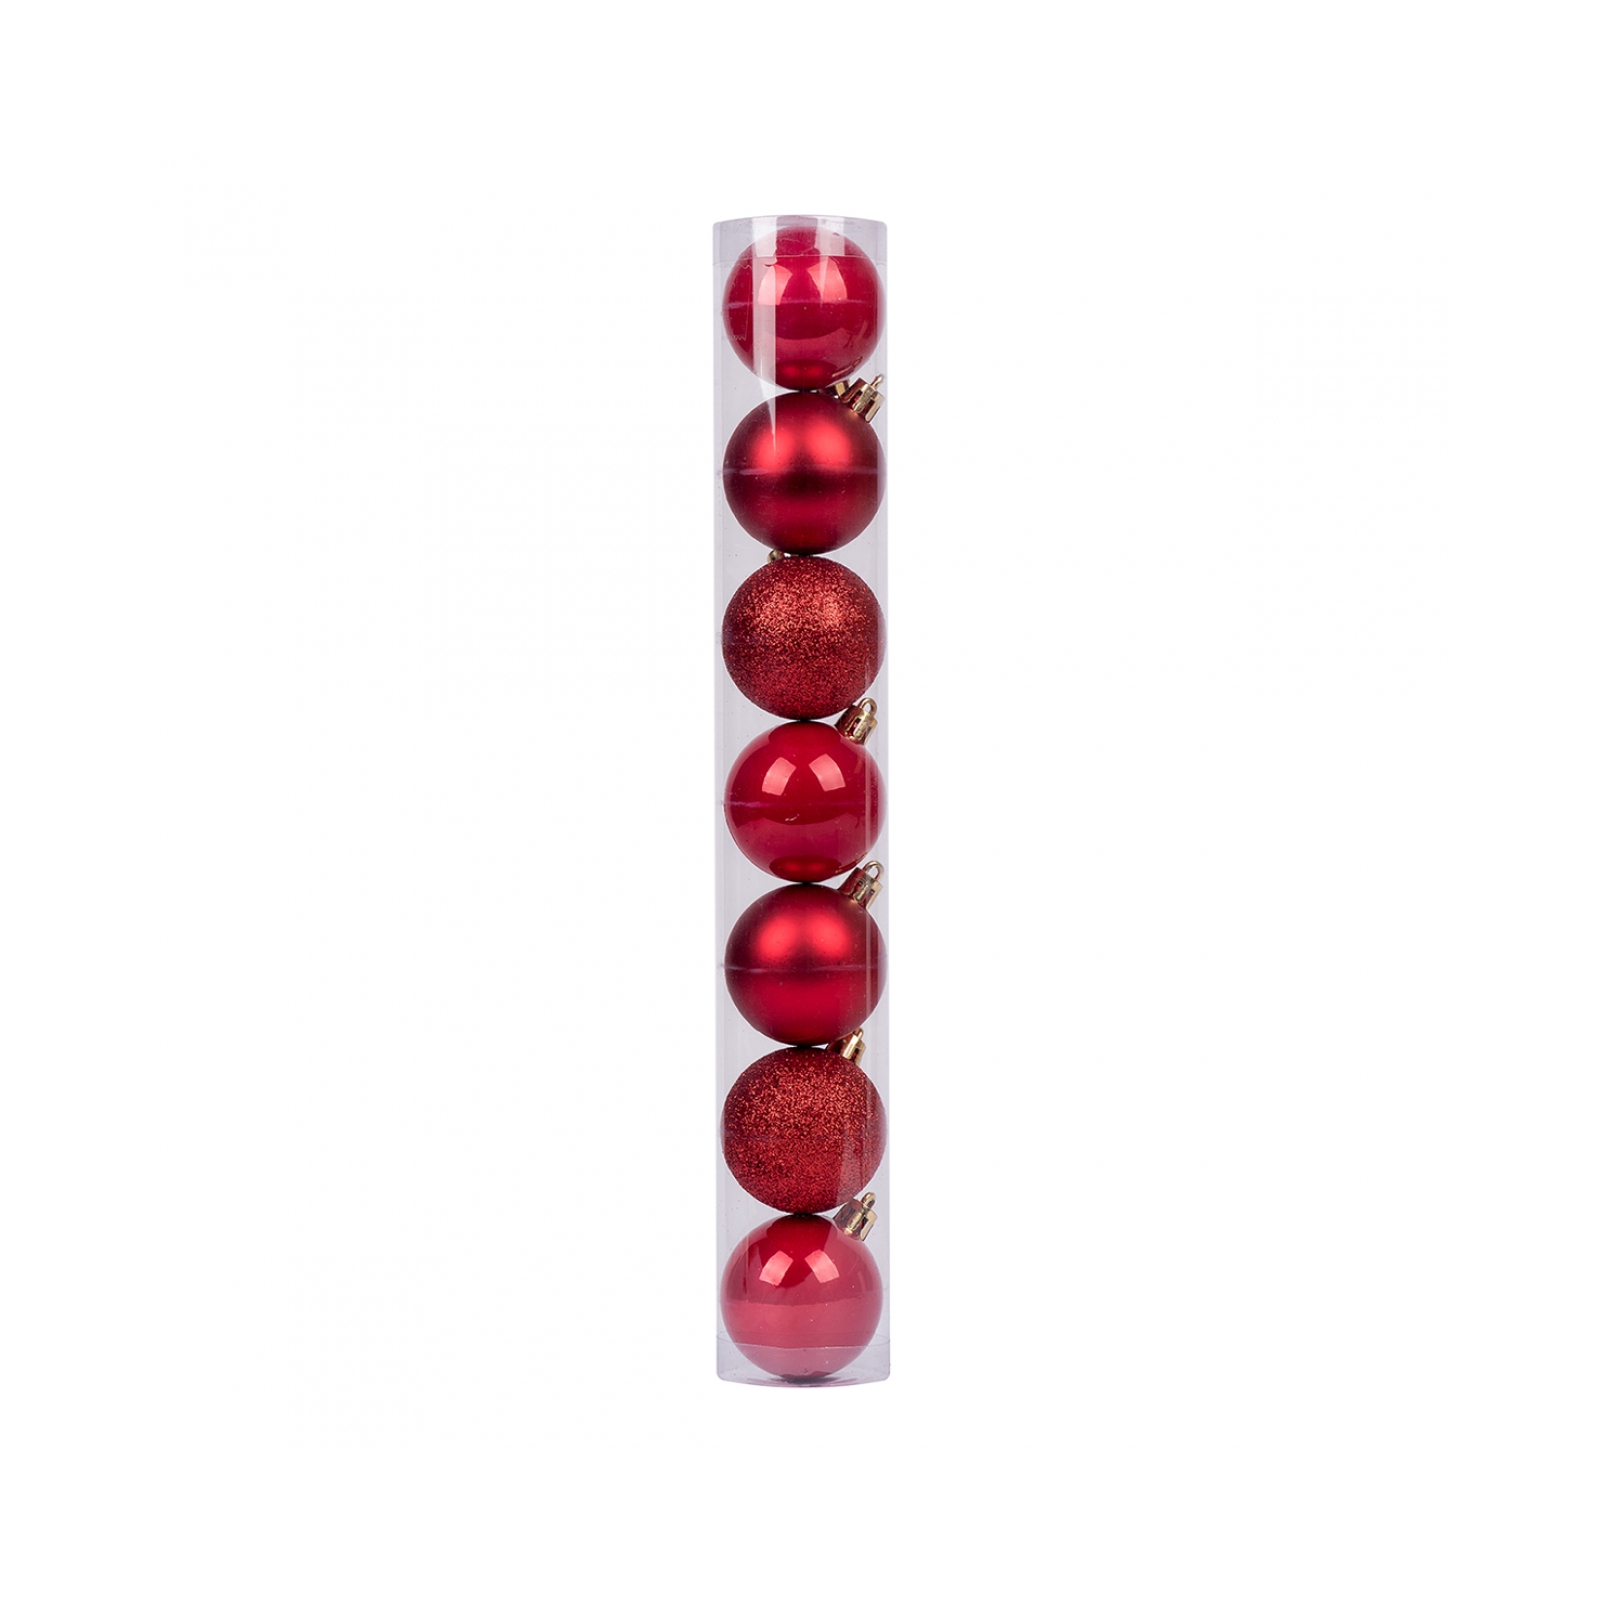 Елочная игрушка Novogod`ko 7 шт красный mix 4 см (974013)